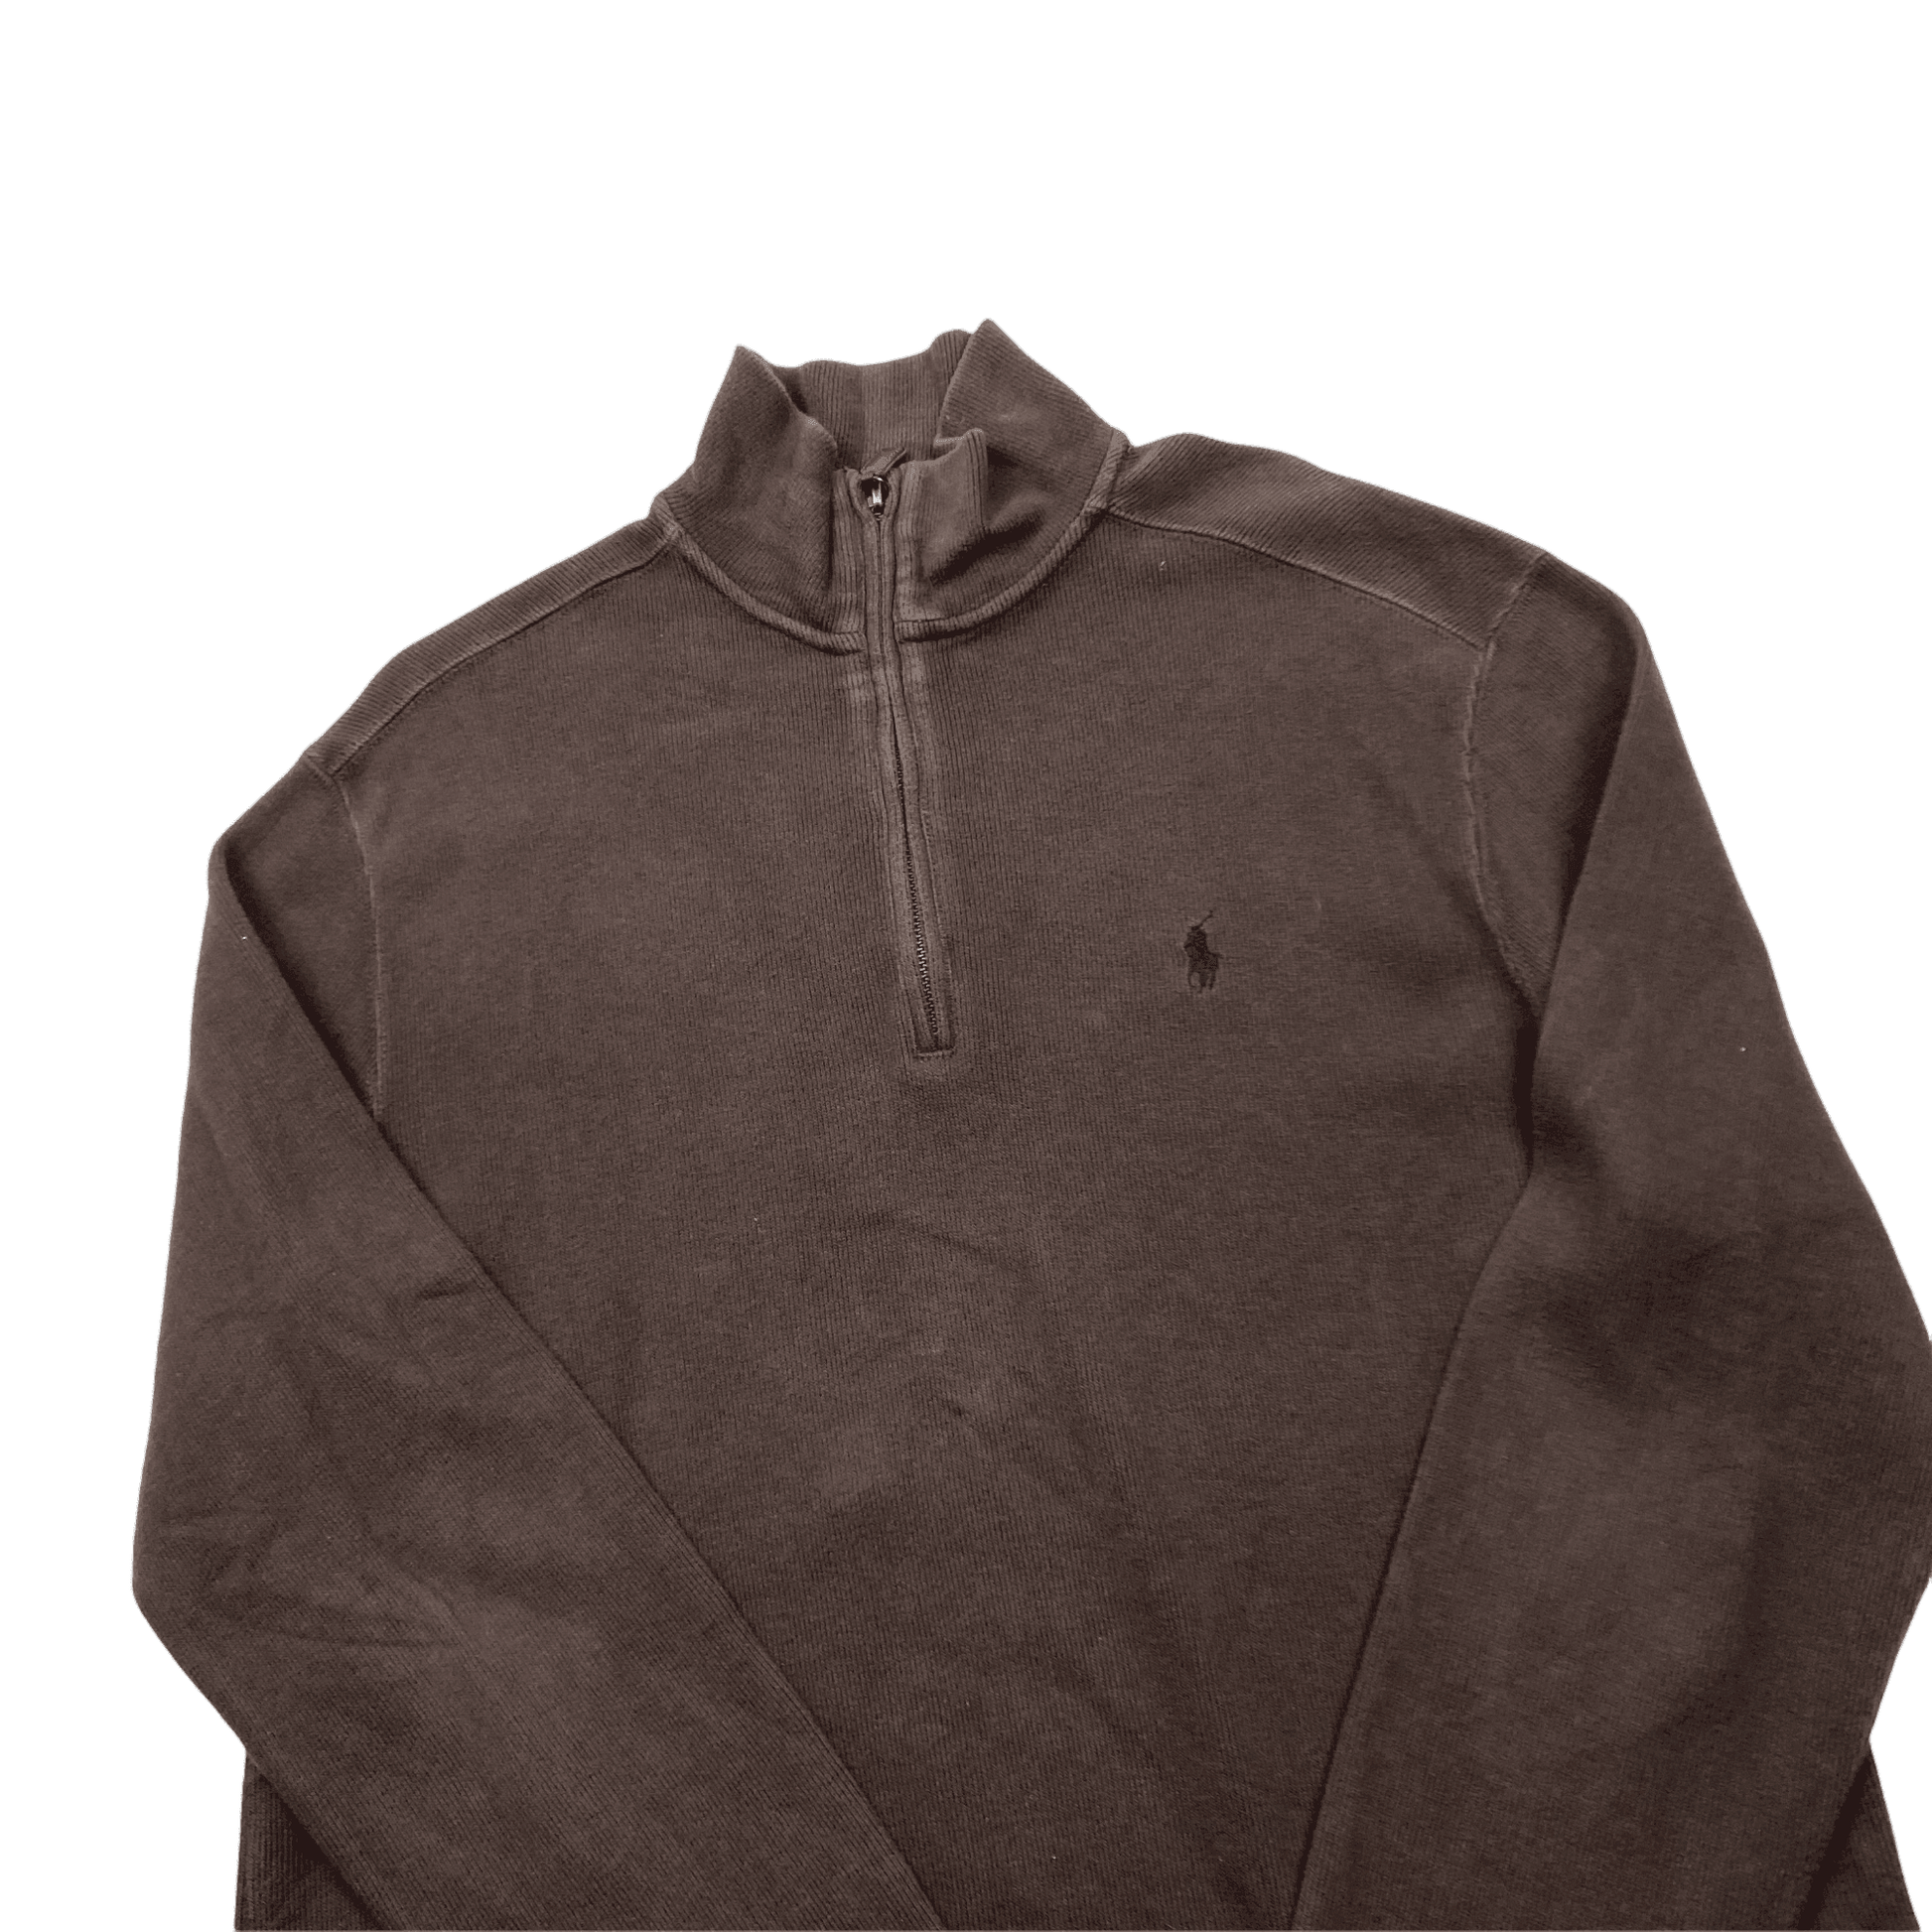 Vintage 90s Brown Polo Ralph Lauren Quarter Zip Sweatshirt - Small - The Streetwear Studio